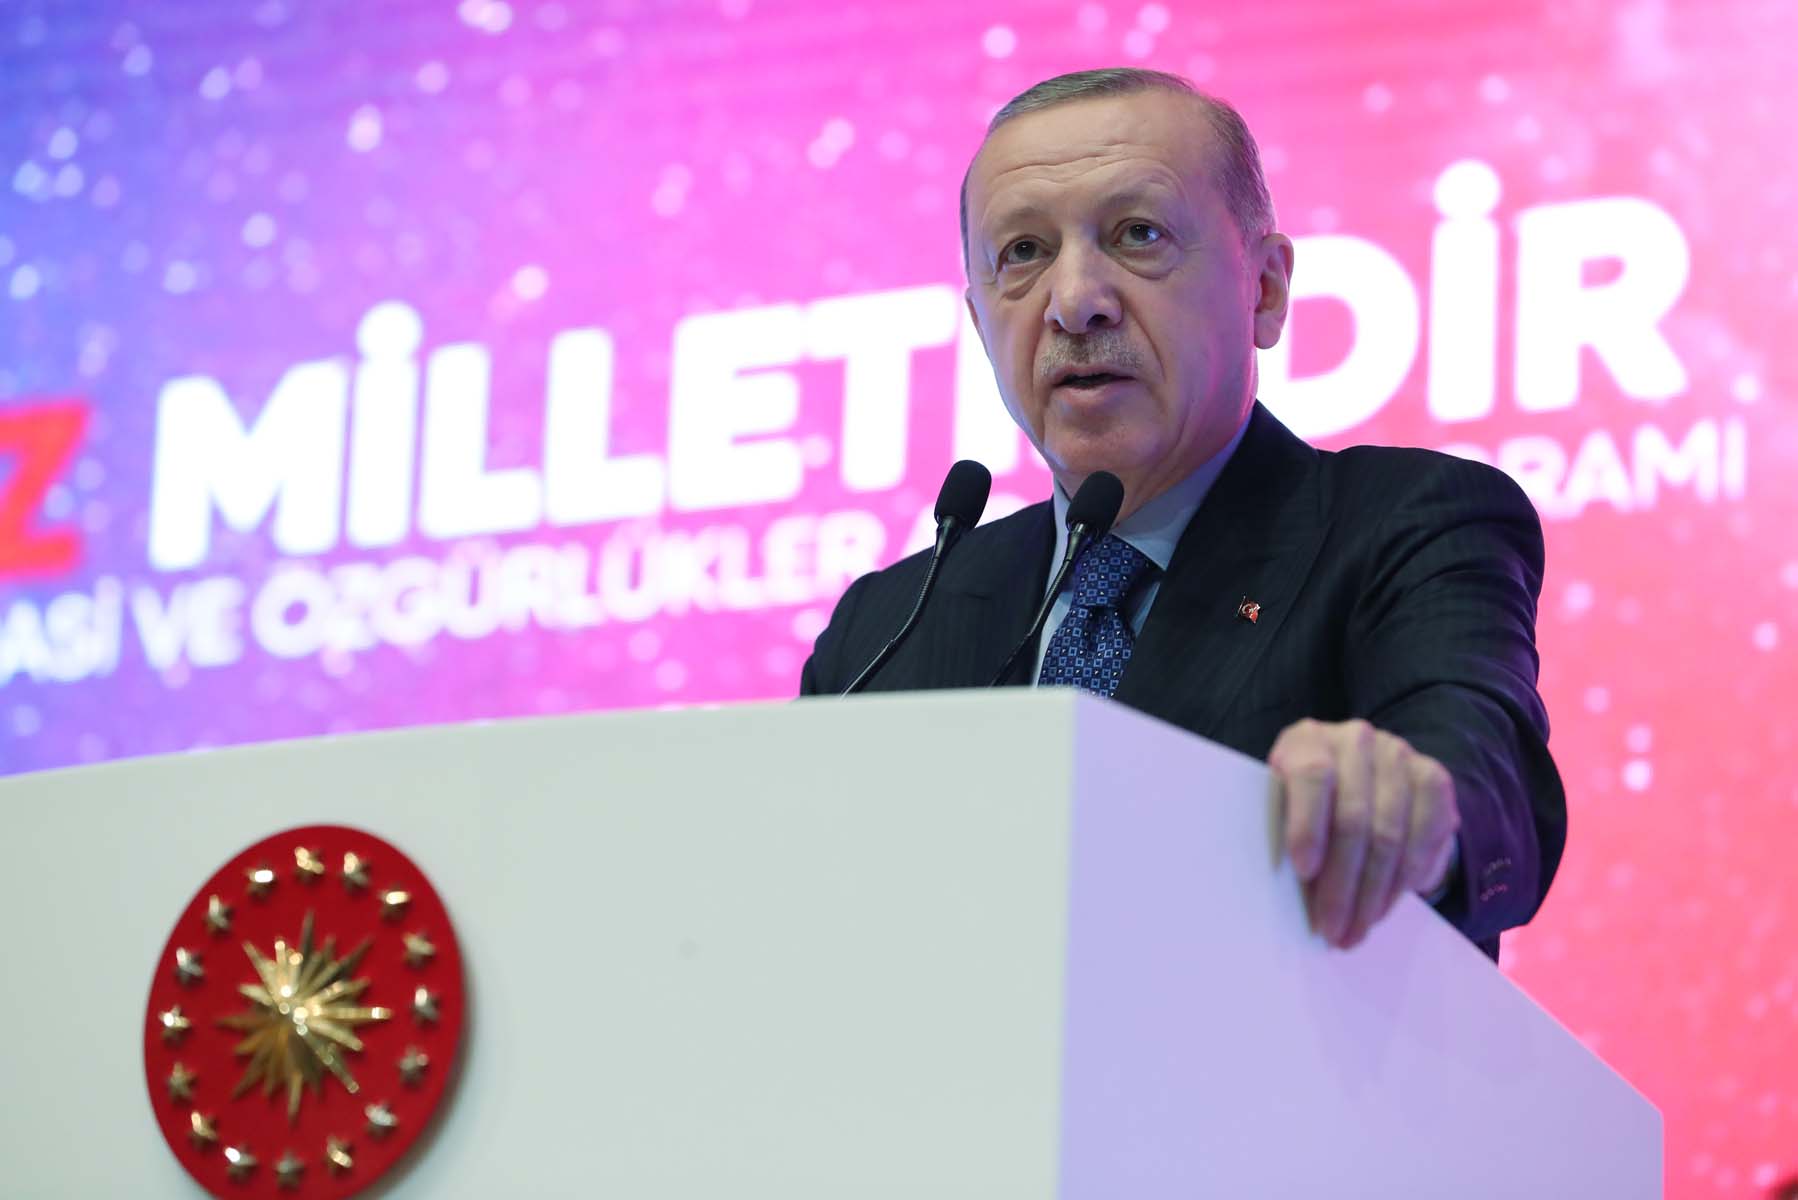 Cumhurbaşkanı Erdoğan, 27 Mayıs Darbesinin 62. Yıldönümü töreninde konuştu! Kılıçdaroğlu'na ateş püskürdü, altılı masaya çattı: Ne yaparsanız yapın